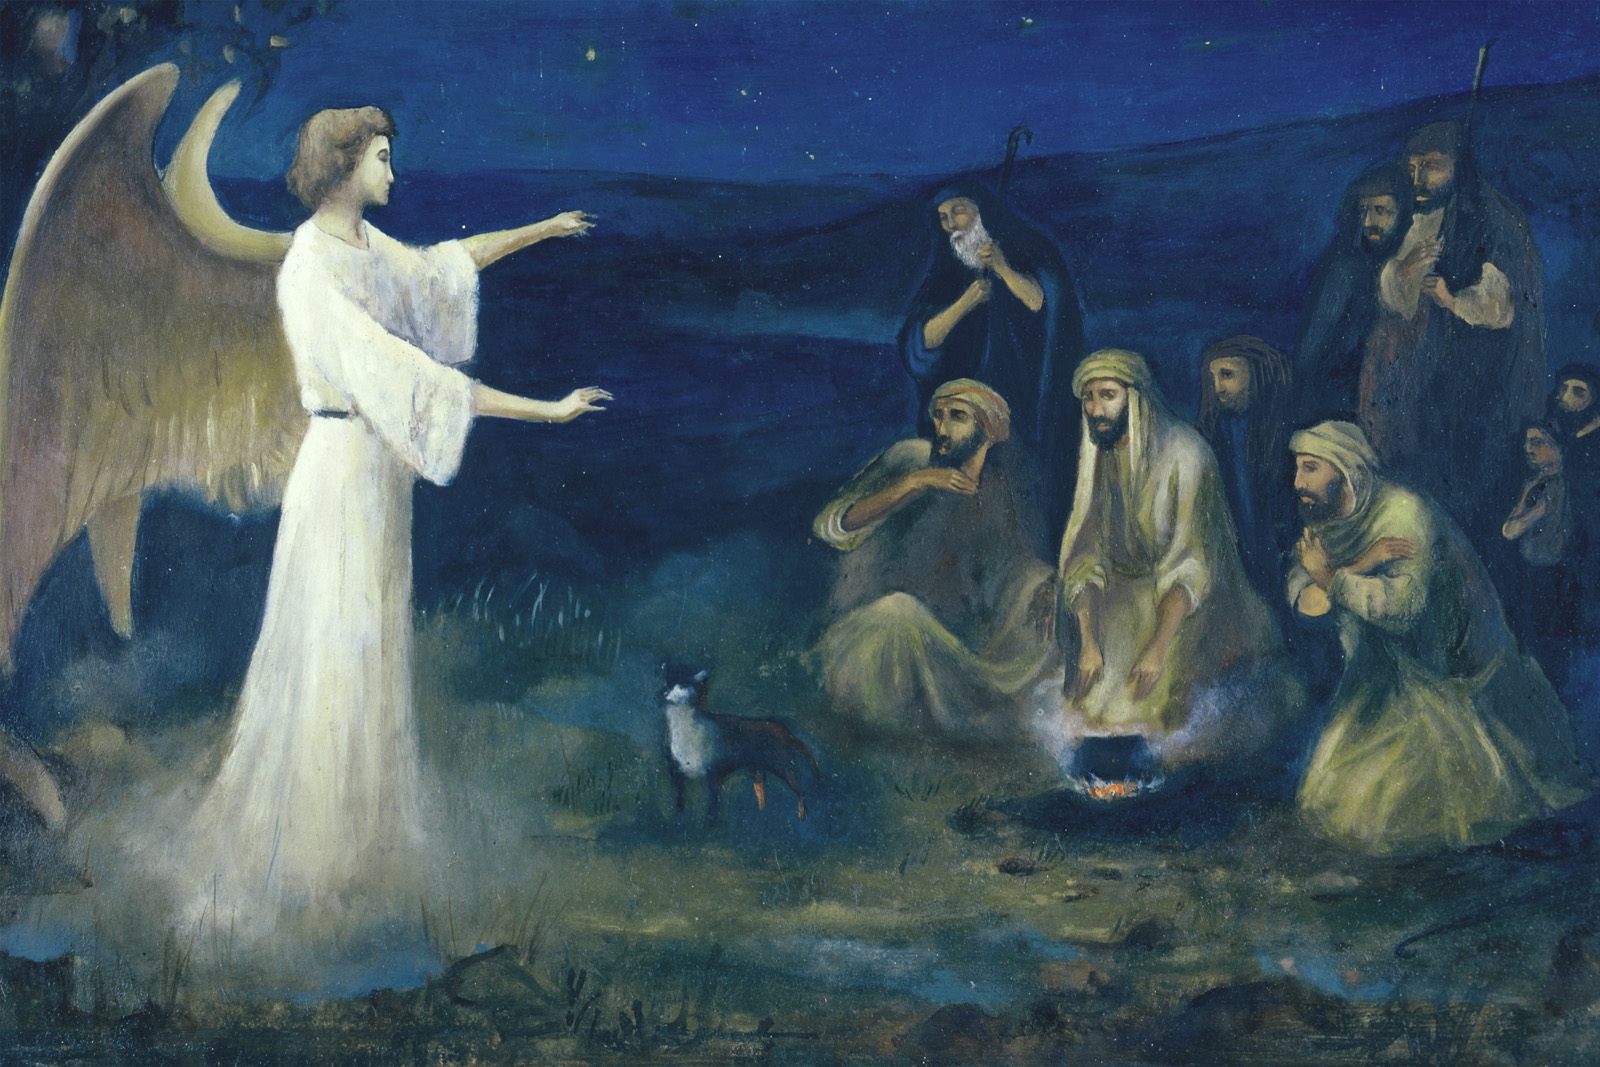 Isusovo rođenje pastiri